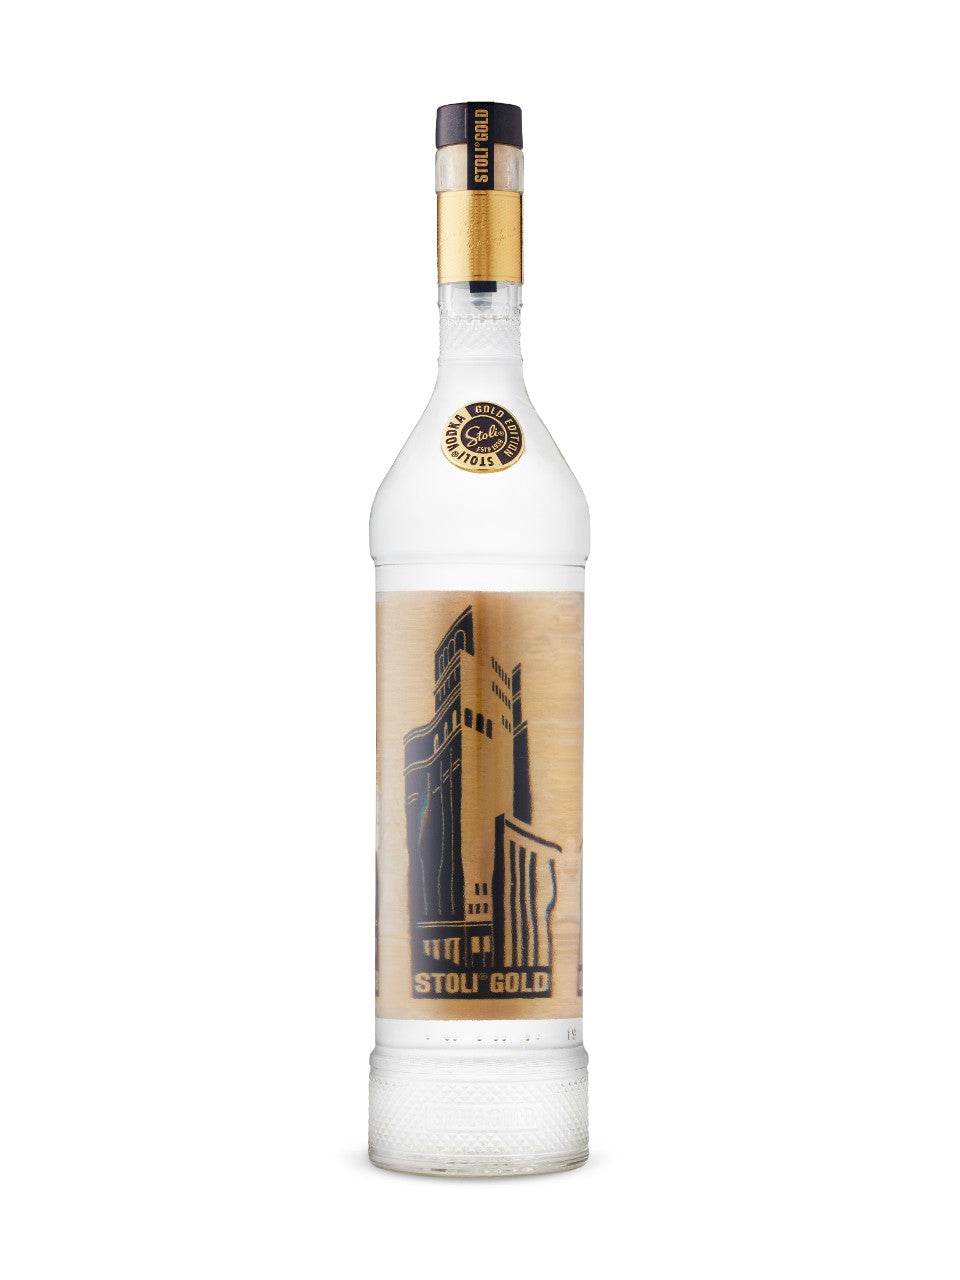 BUY] Stolichnaya Stoli Gold Vodka (RECOMMENDED) at CaskCartel.com